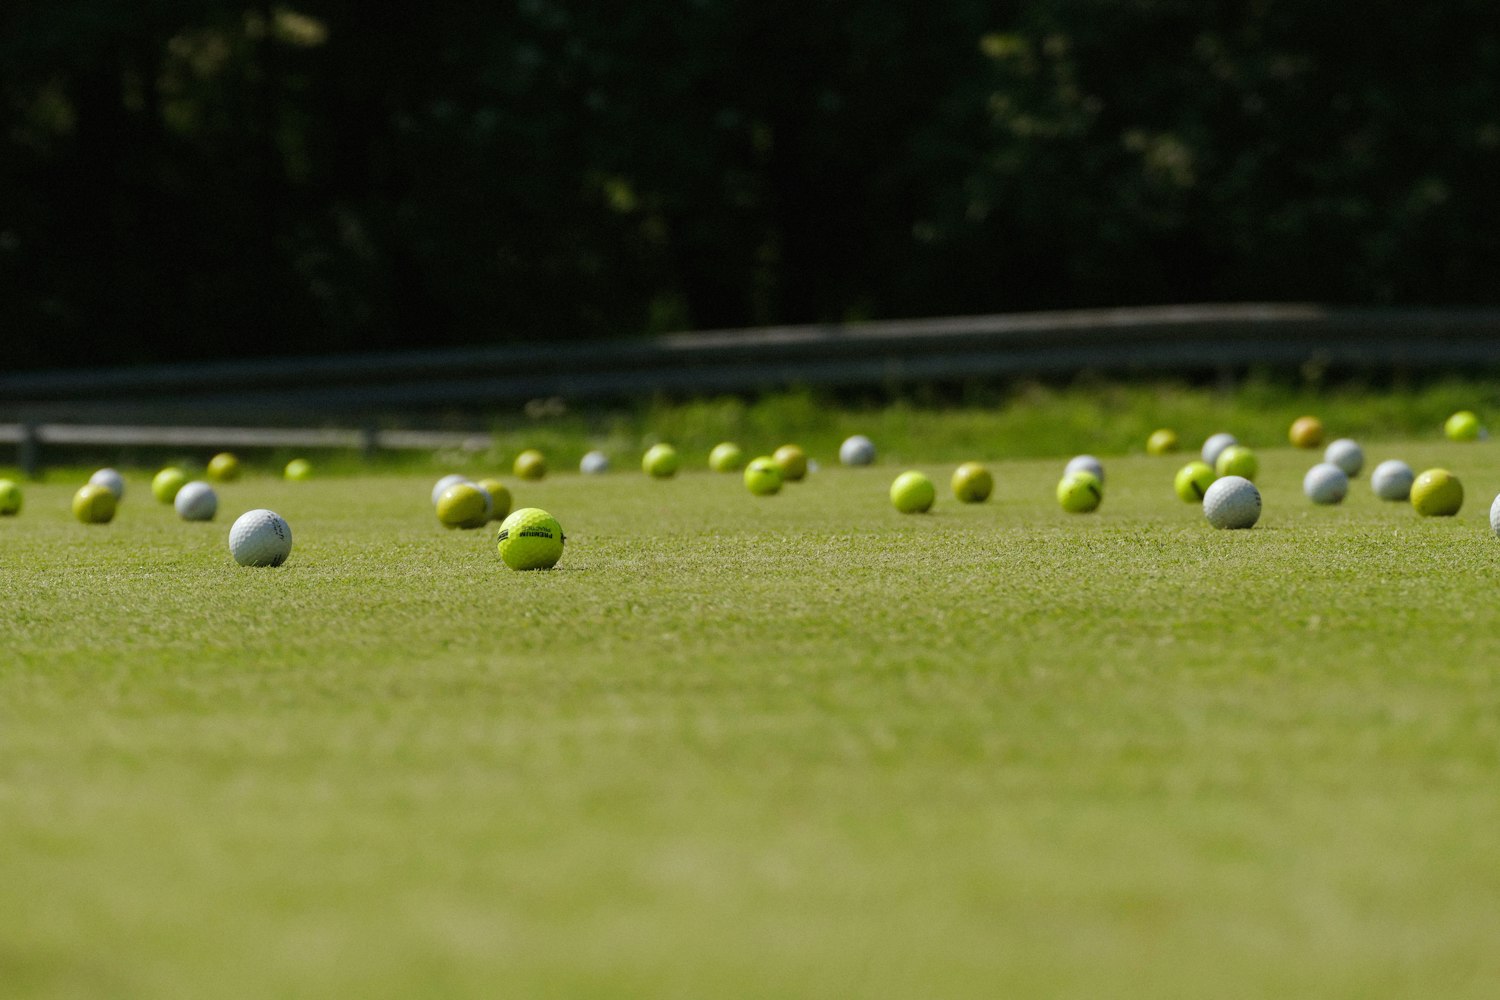 Bunch of golf balls on a grass